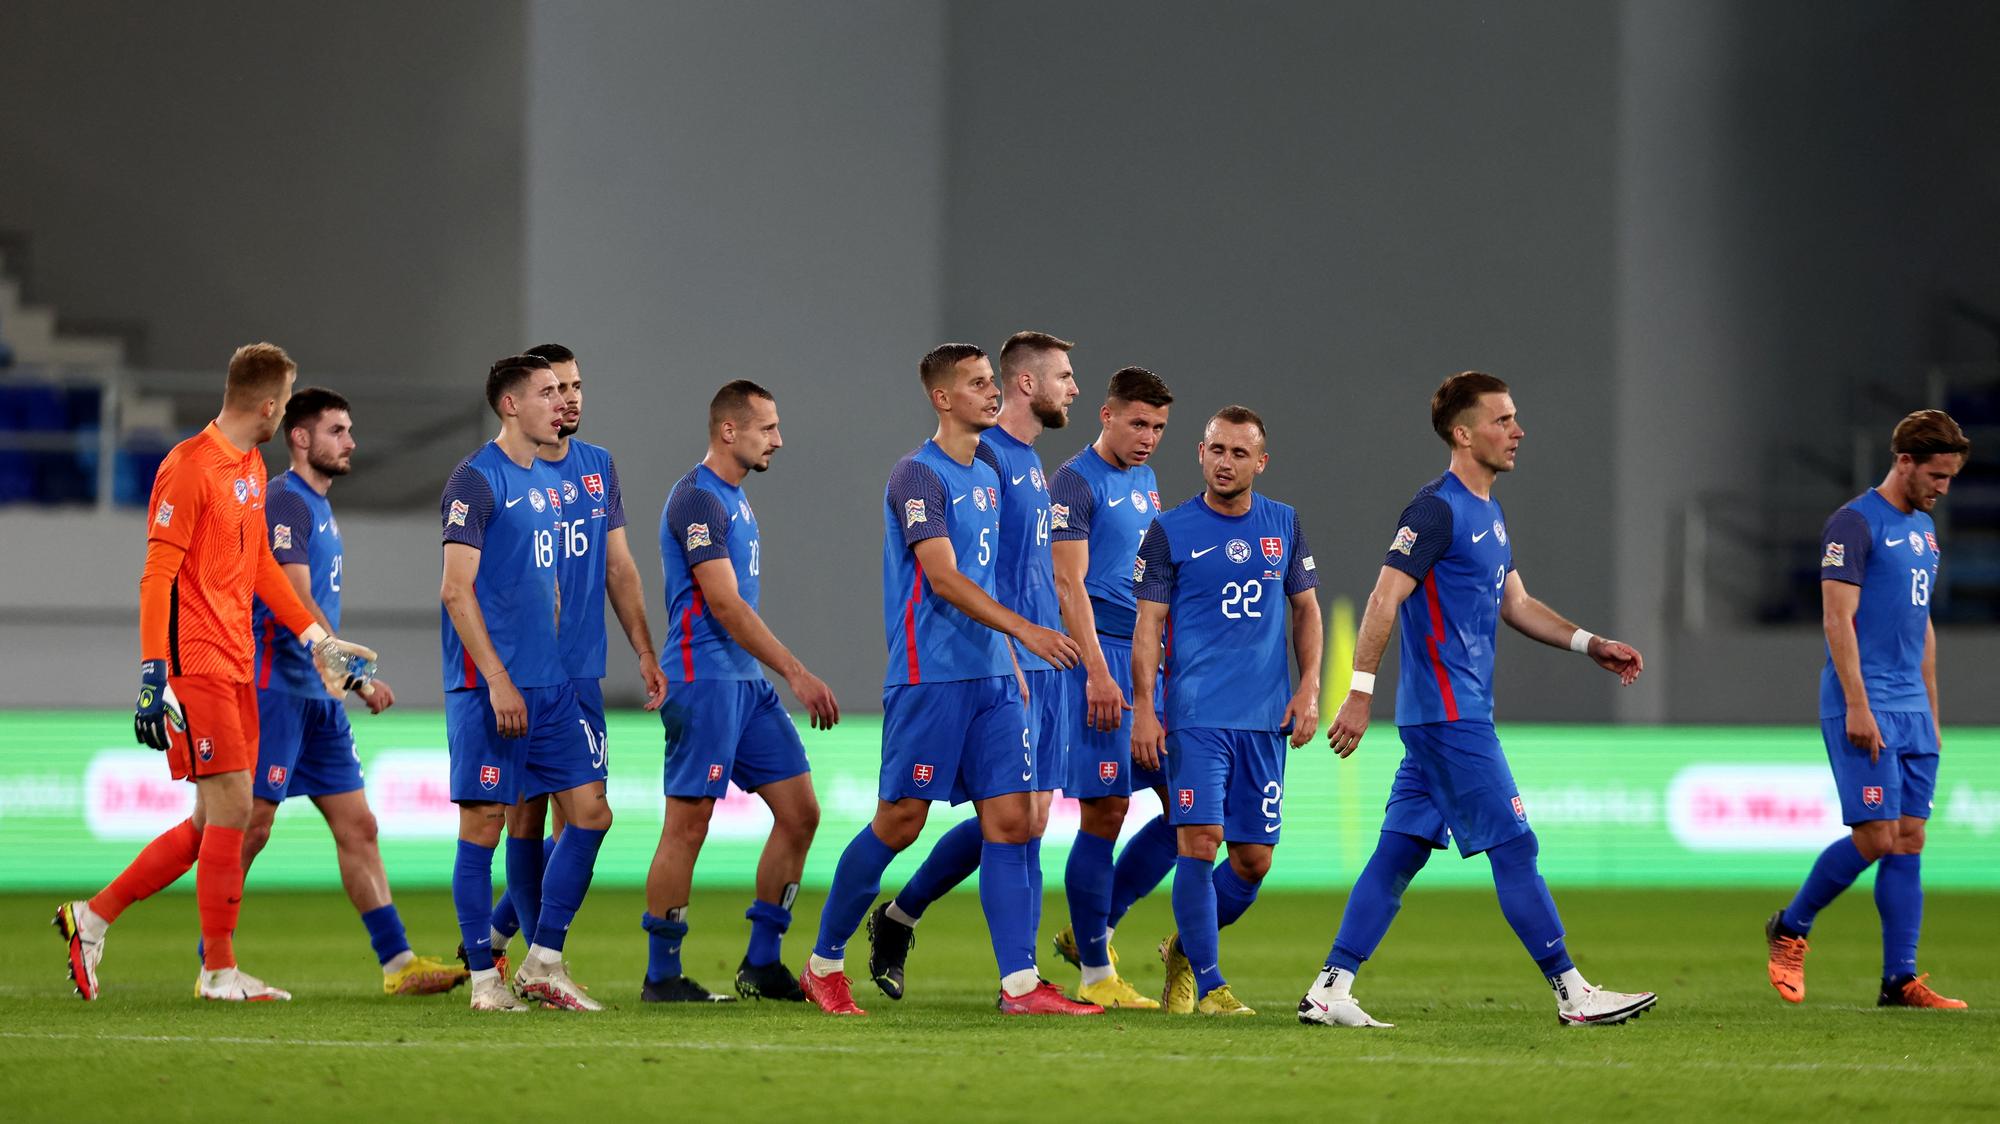 Liga národov: Slovensko - Bielorusko / výsledok | Šport.sk